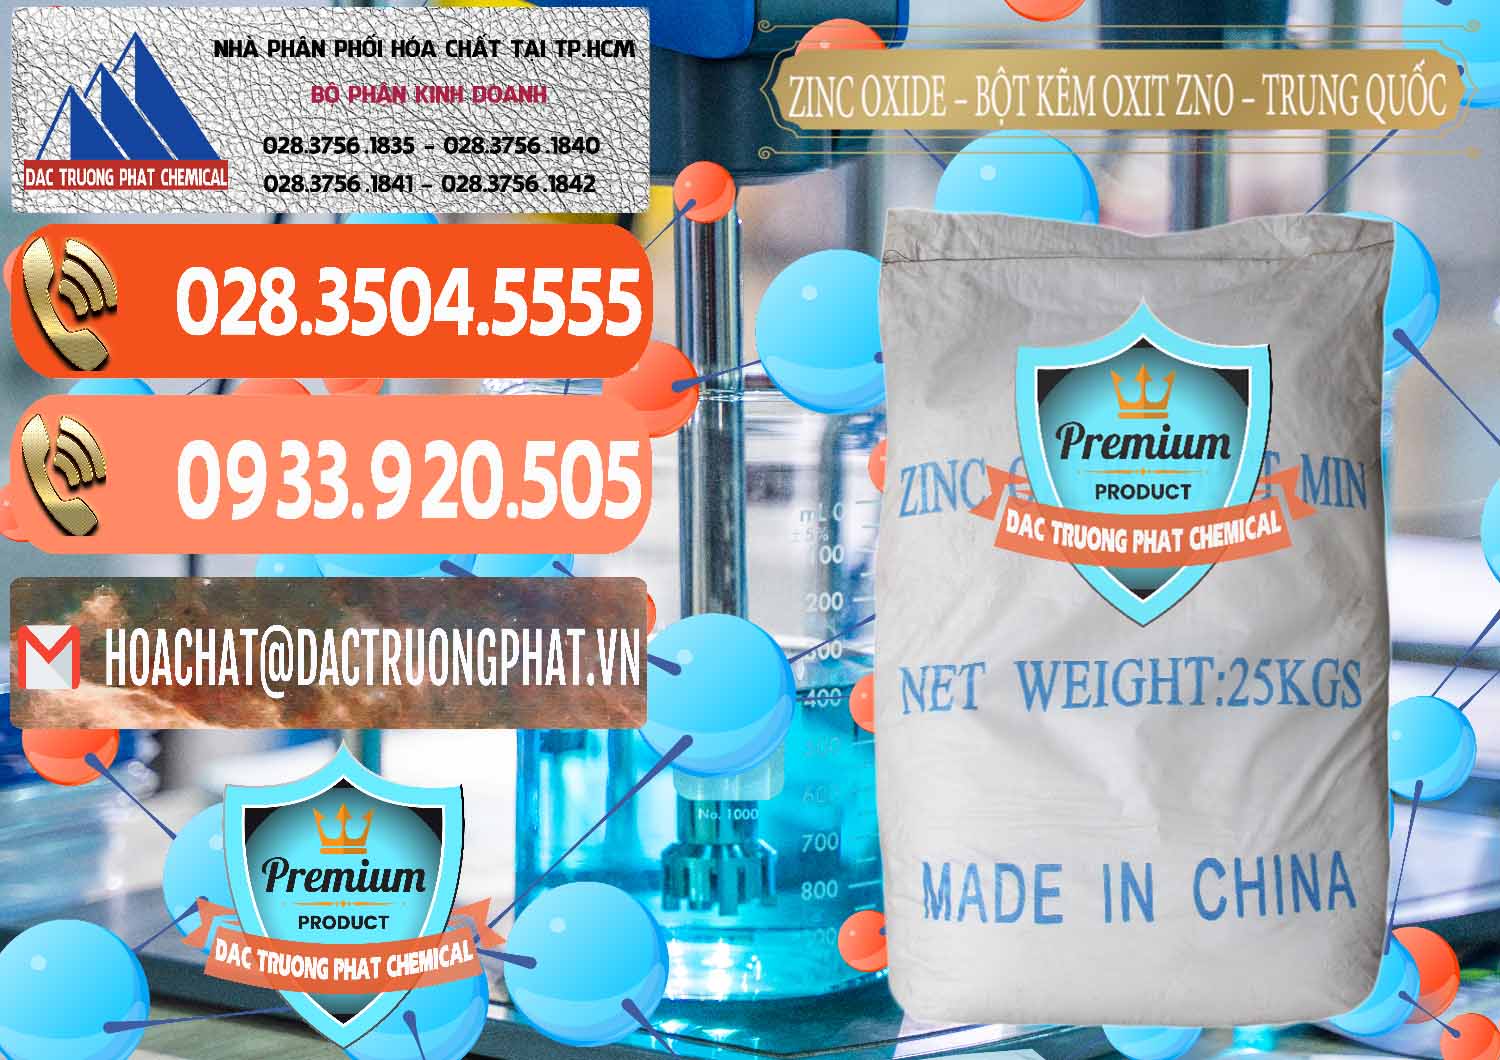 Nơi phân phối và bán Zinc Oxide - Bột Kẽm Oxit ZNO Trung Quốc China - 0182 - Cty kinh doanh _ phân phối hóa chất tại TP.HCM - hoachatmientay.com